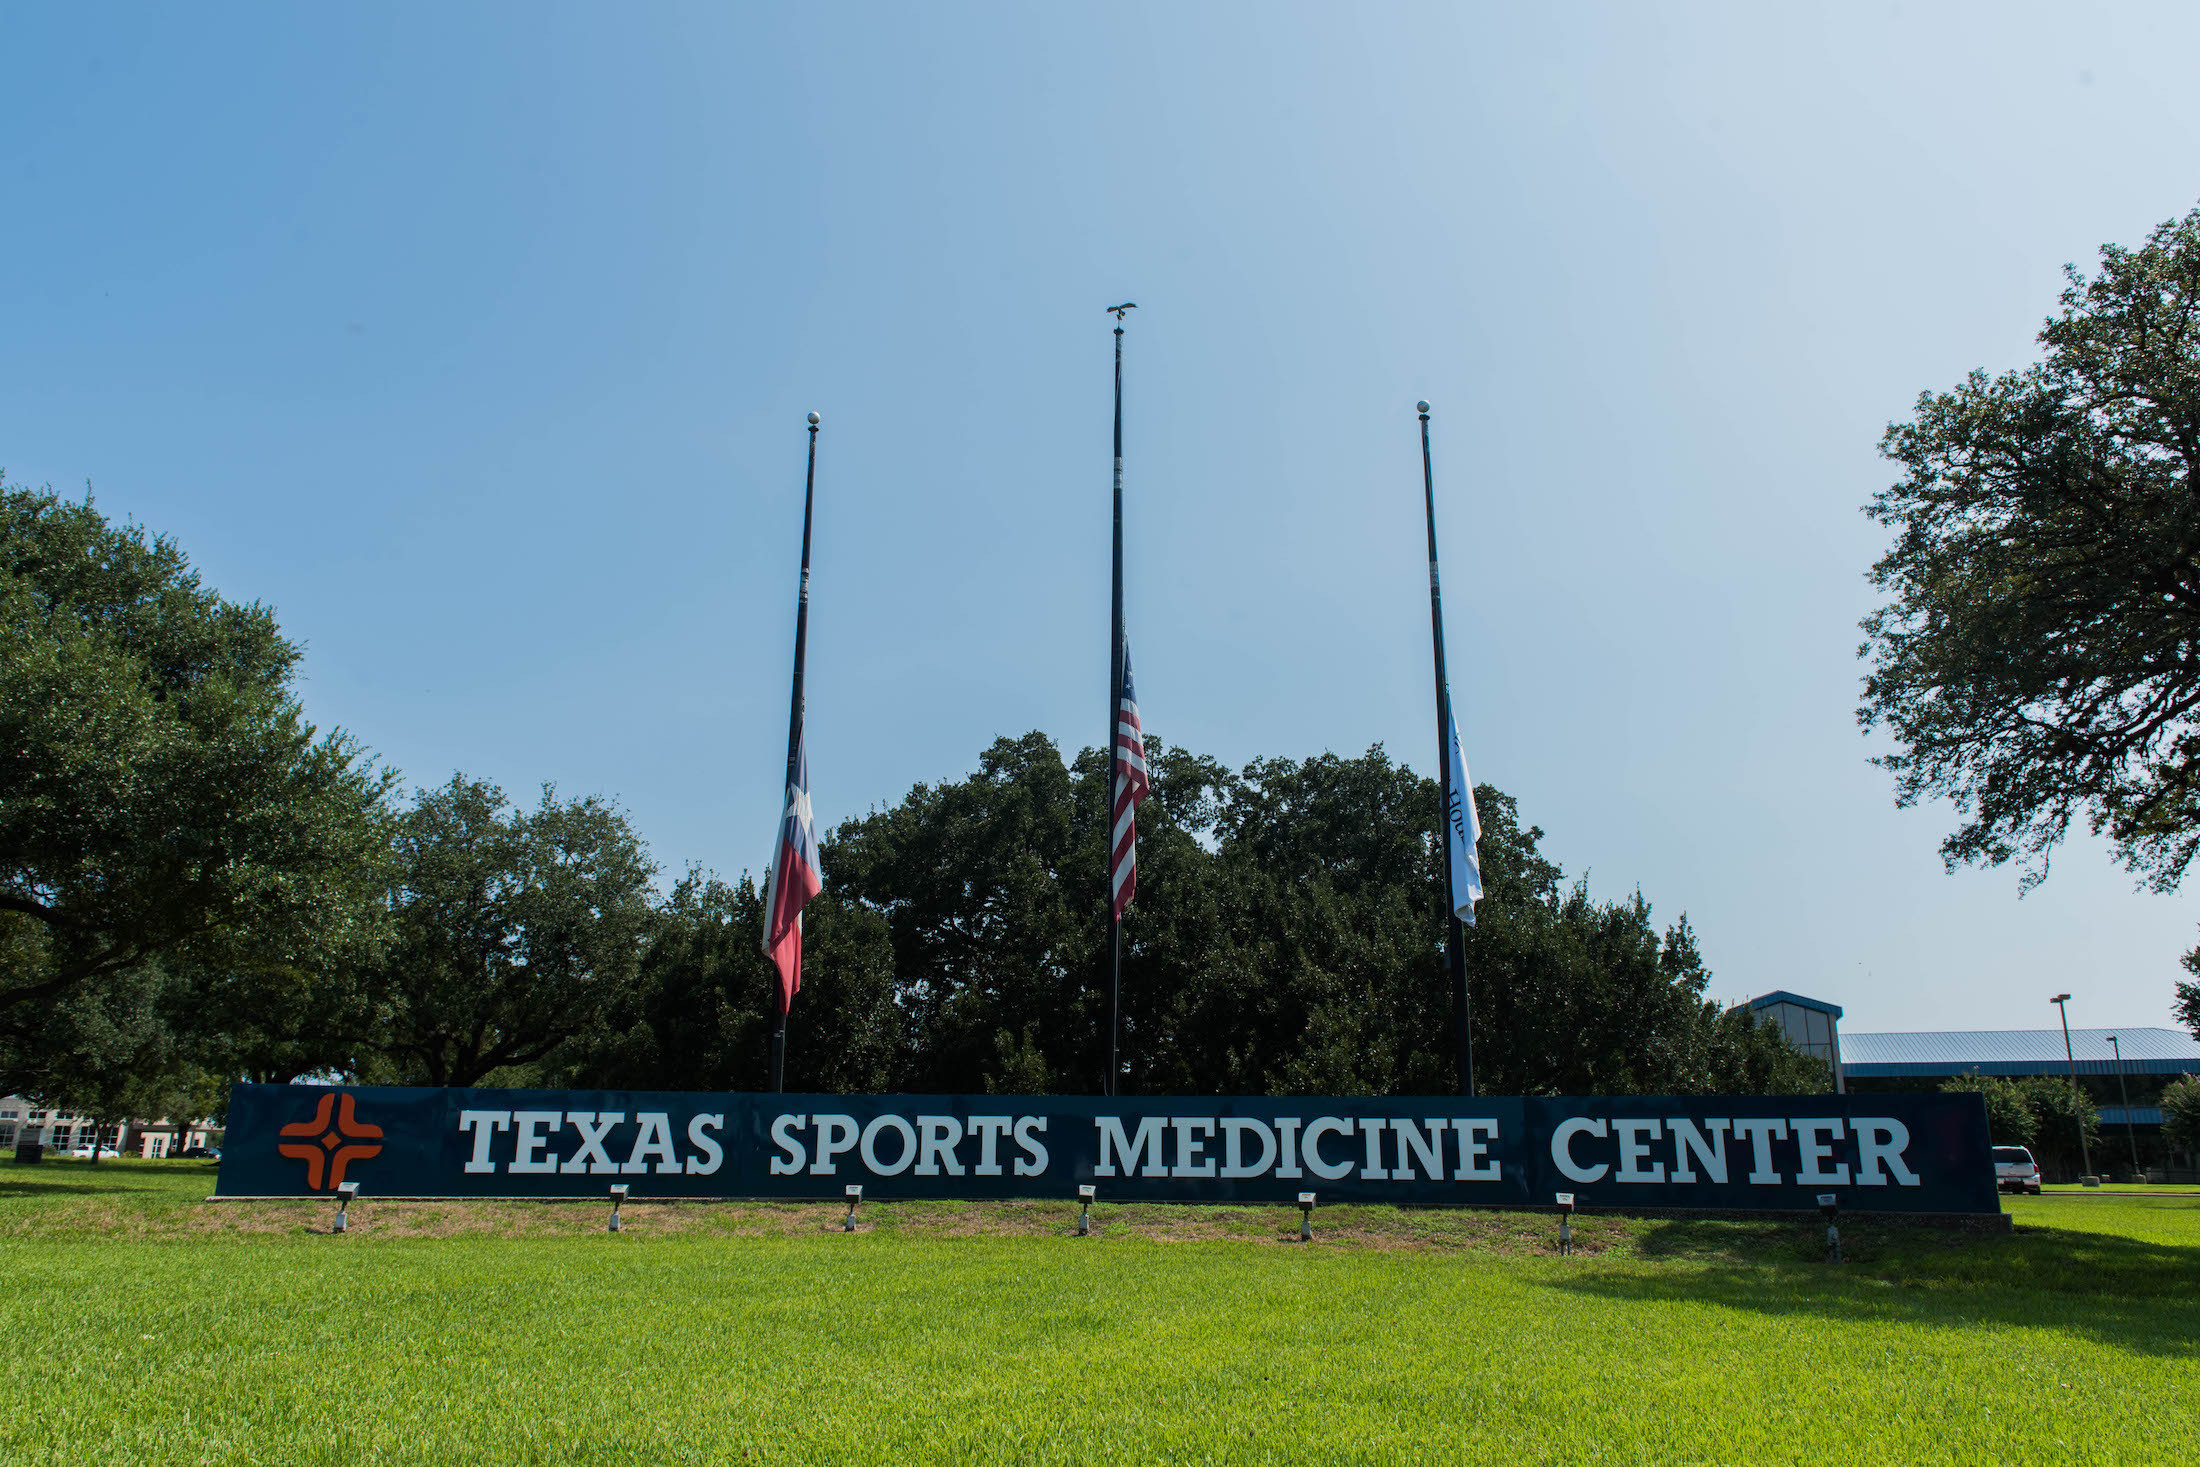 Texas sports medicine center sign